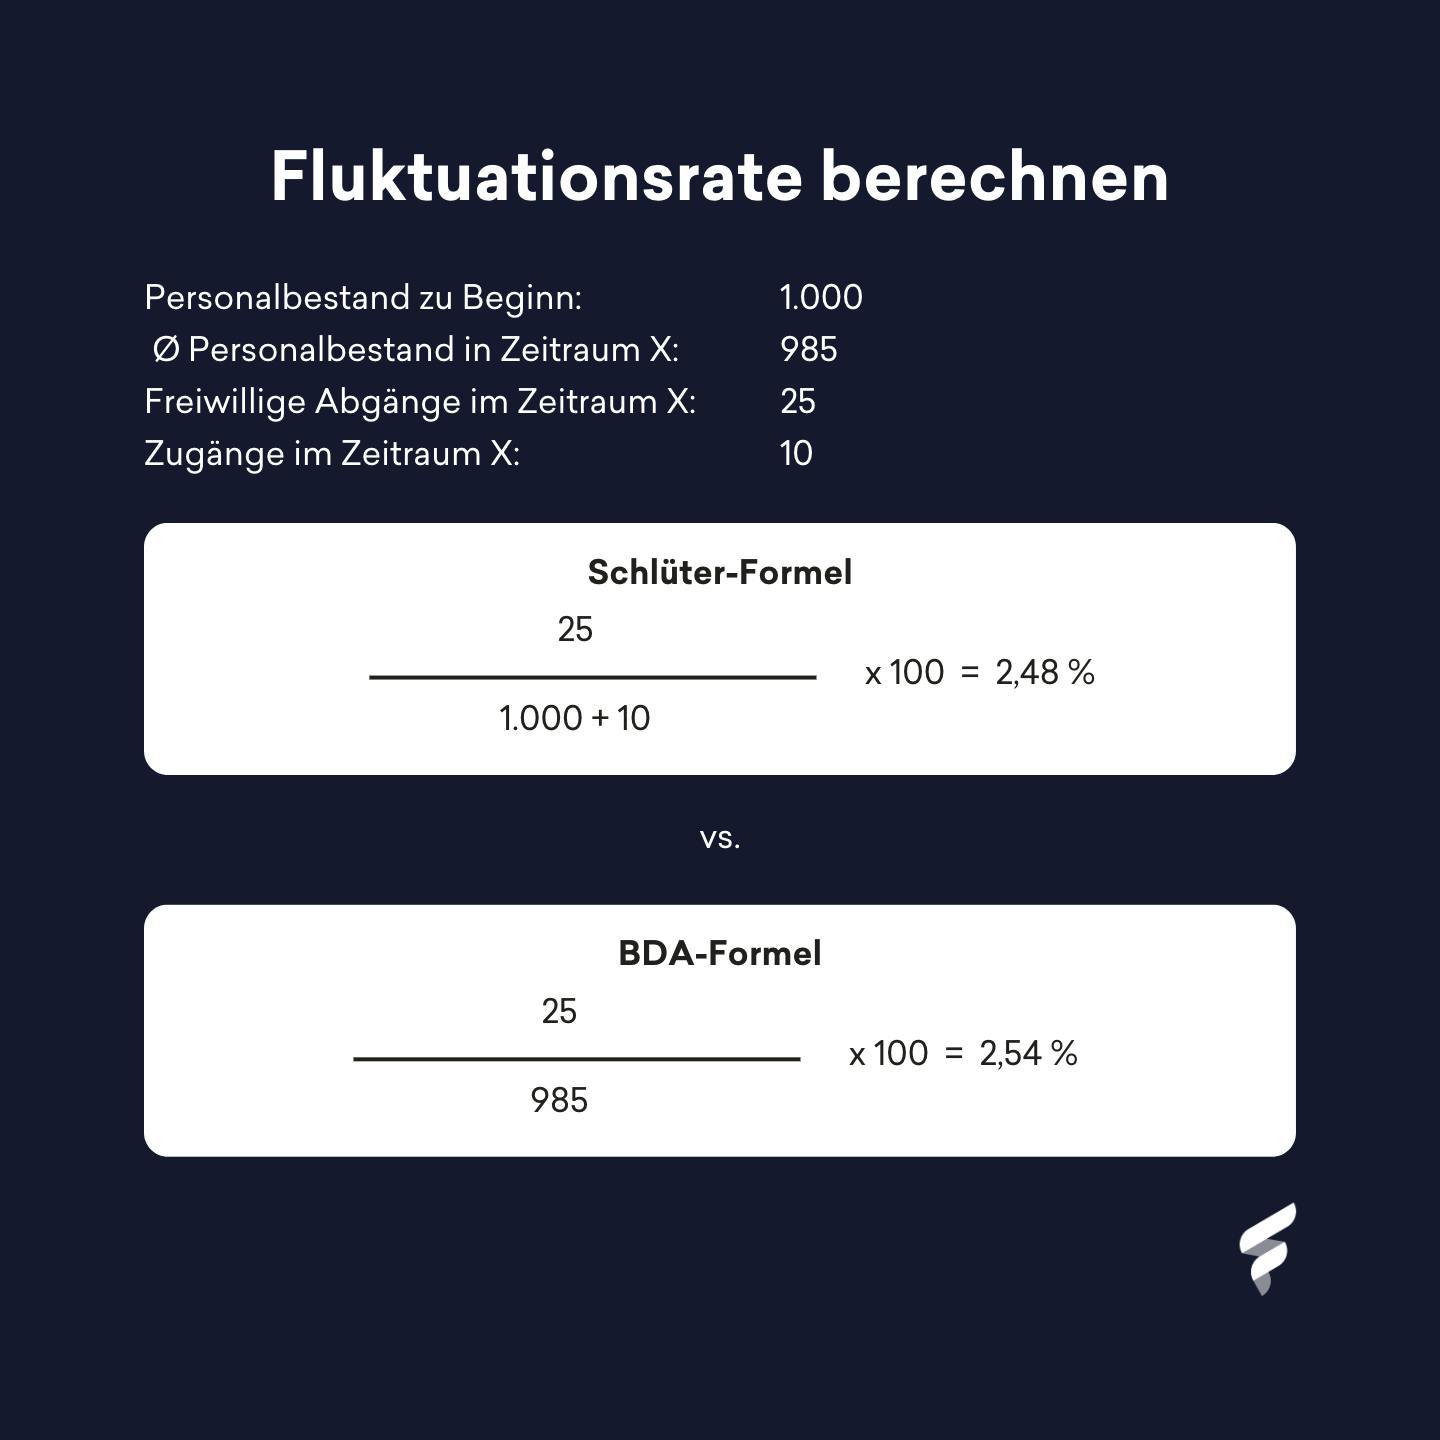 Fluktuationsrate berechnen anhand der Schlüter-Formel und der BDA-Formel